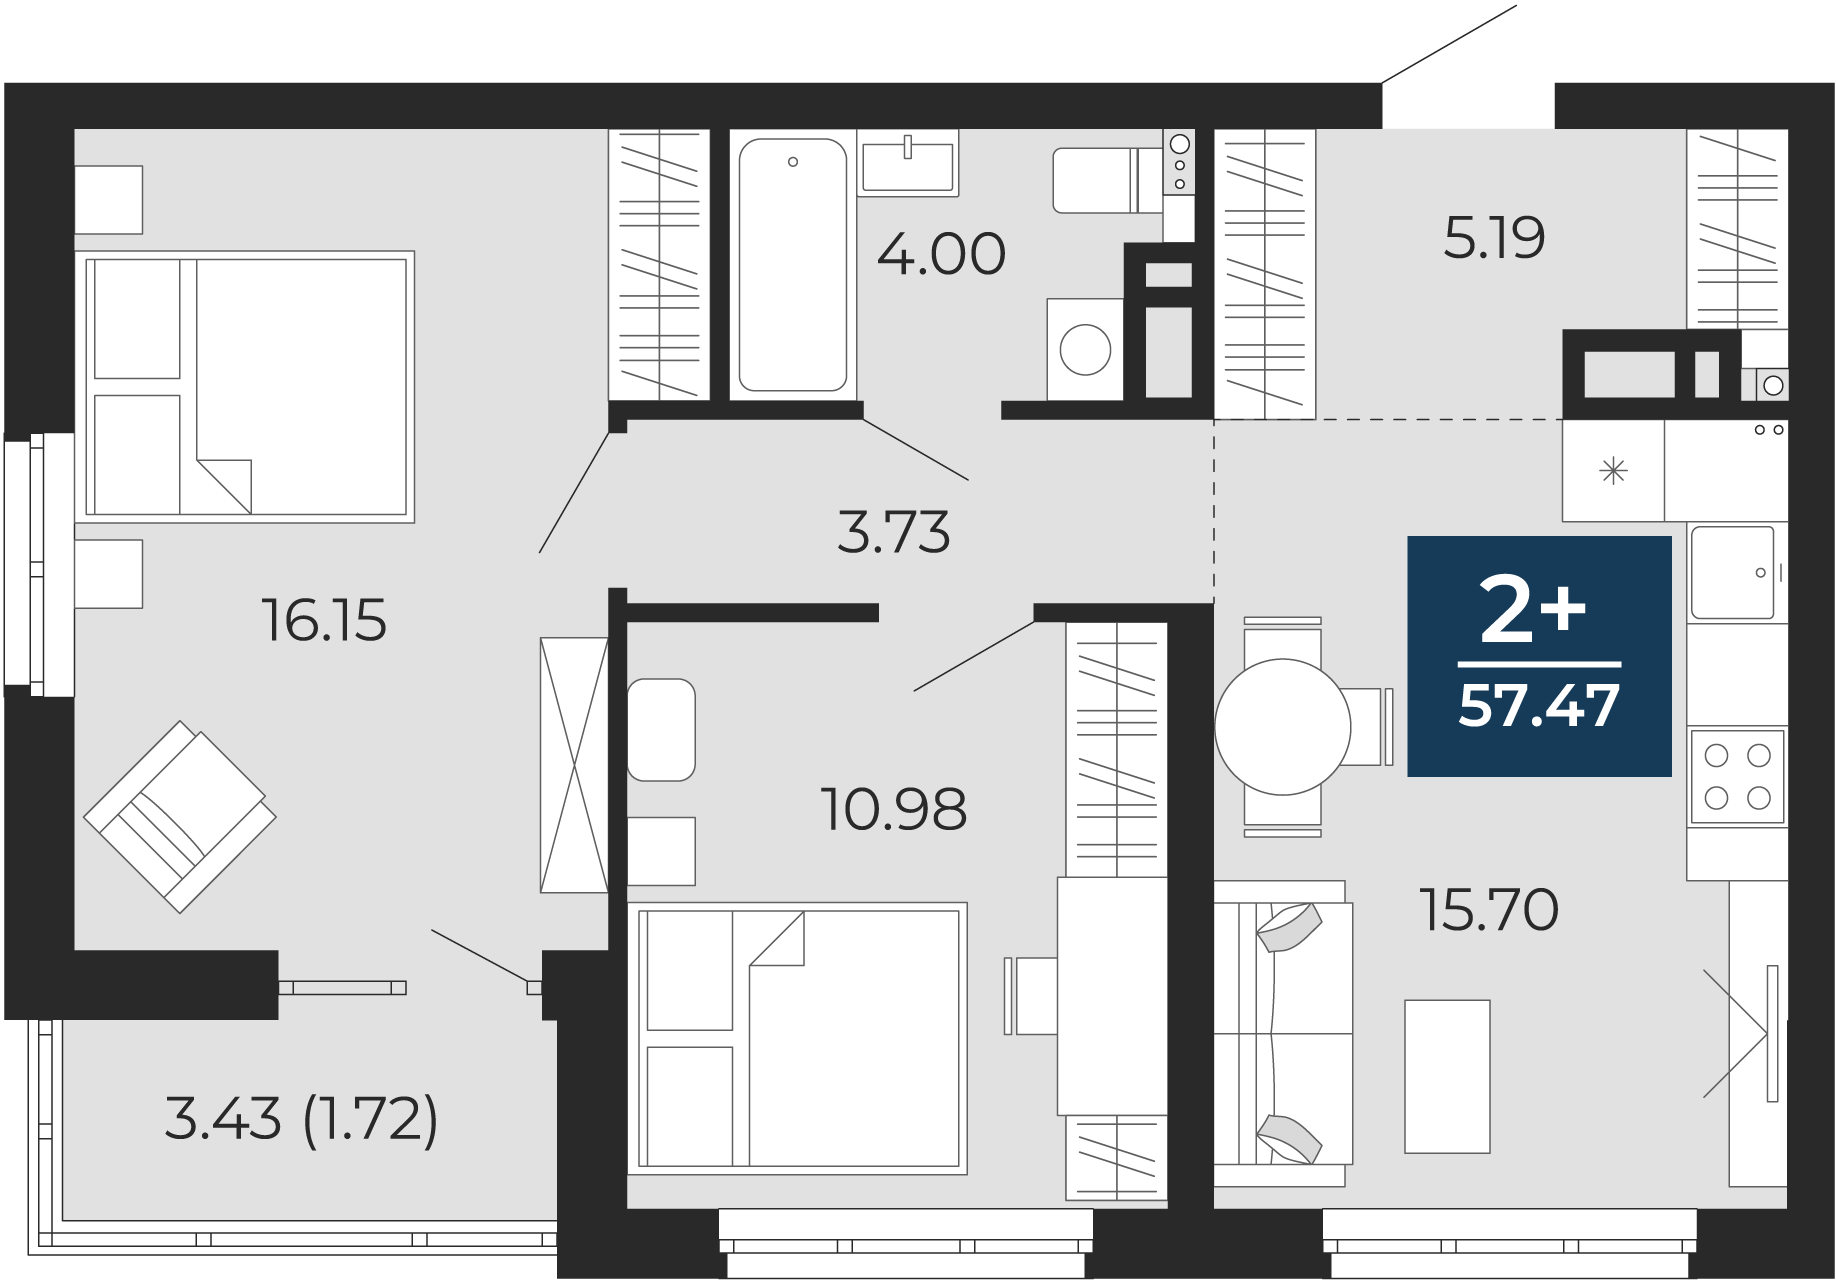 Квартира № 25, 2-комнатная, 57.47 кв. м, 4 этаж